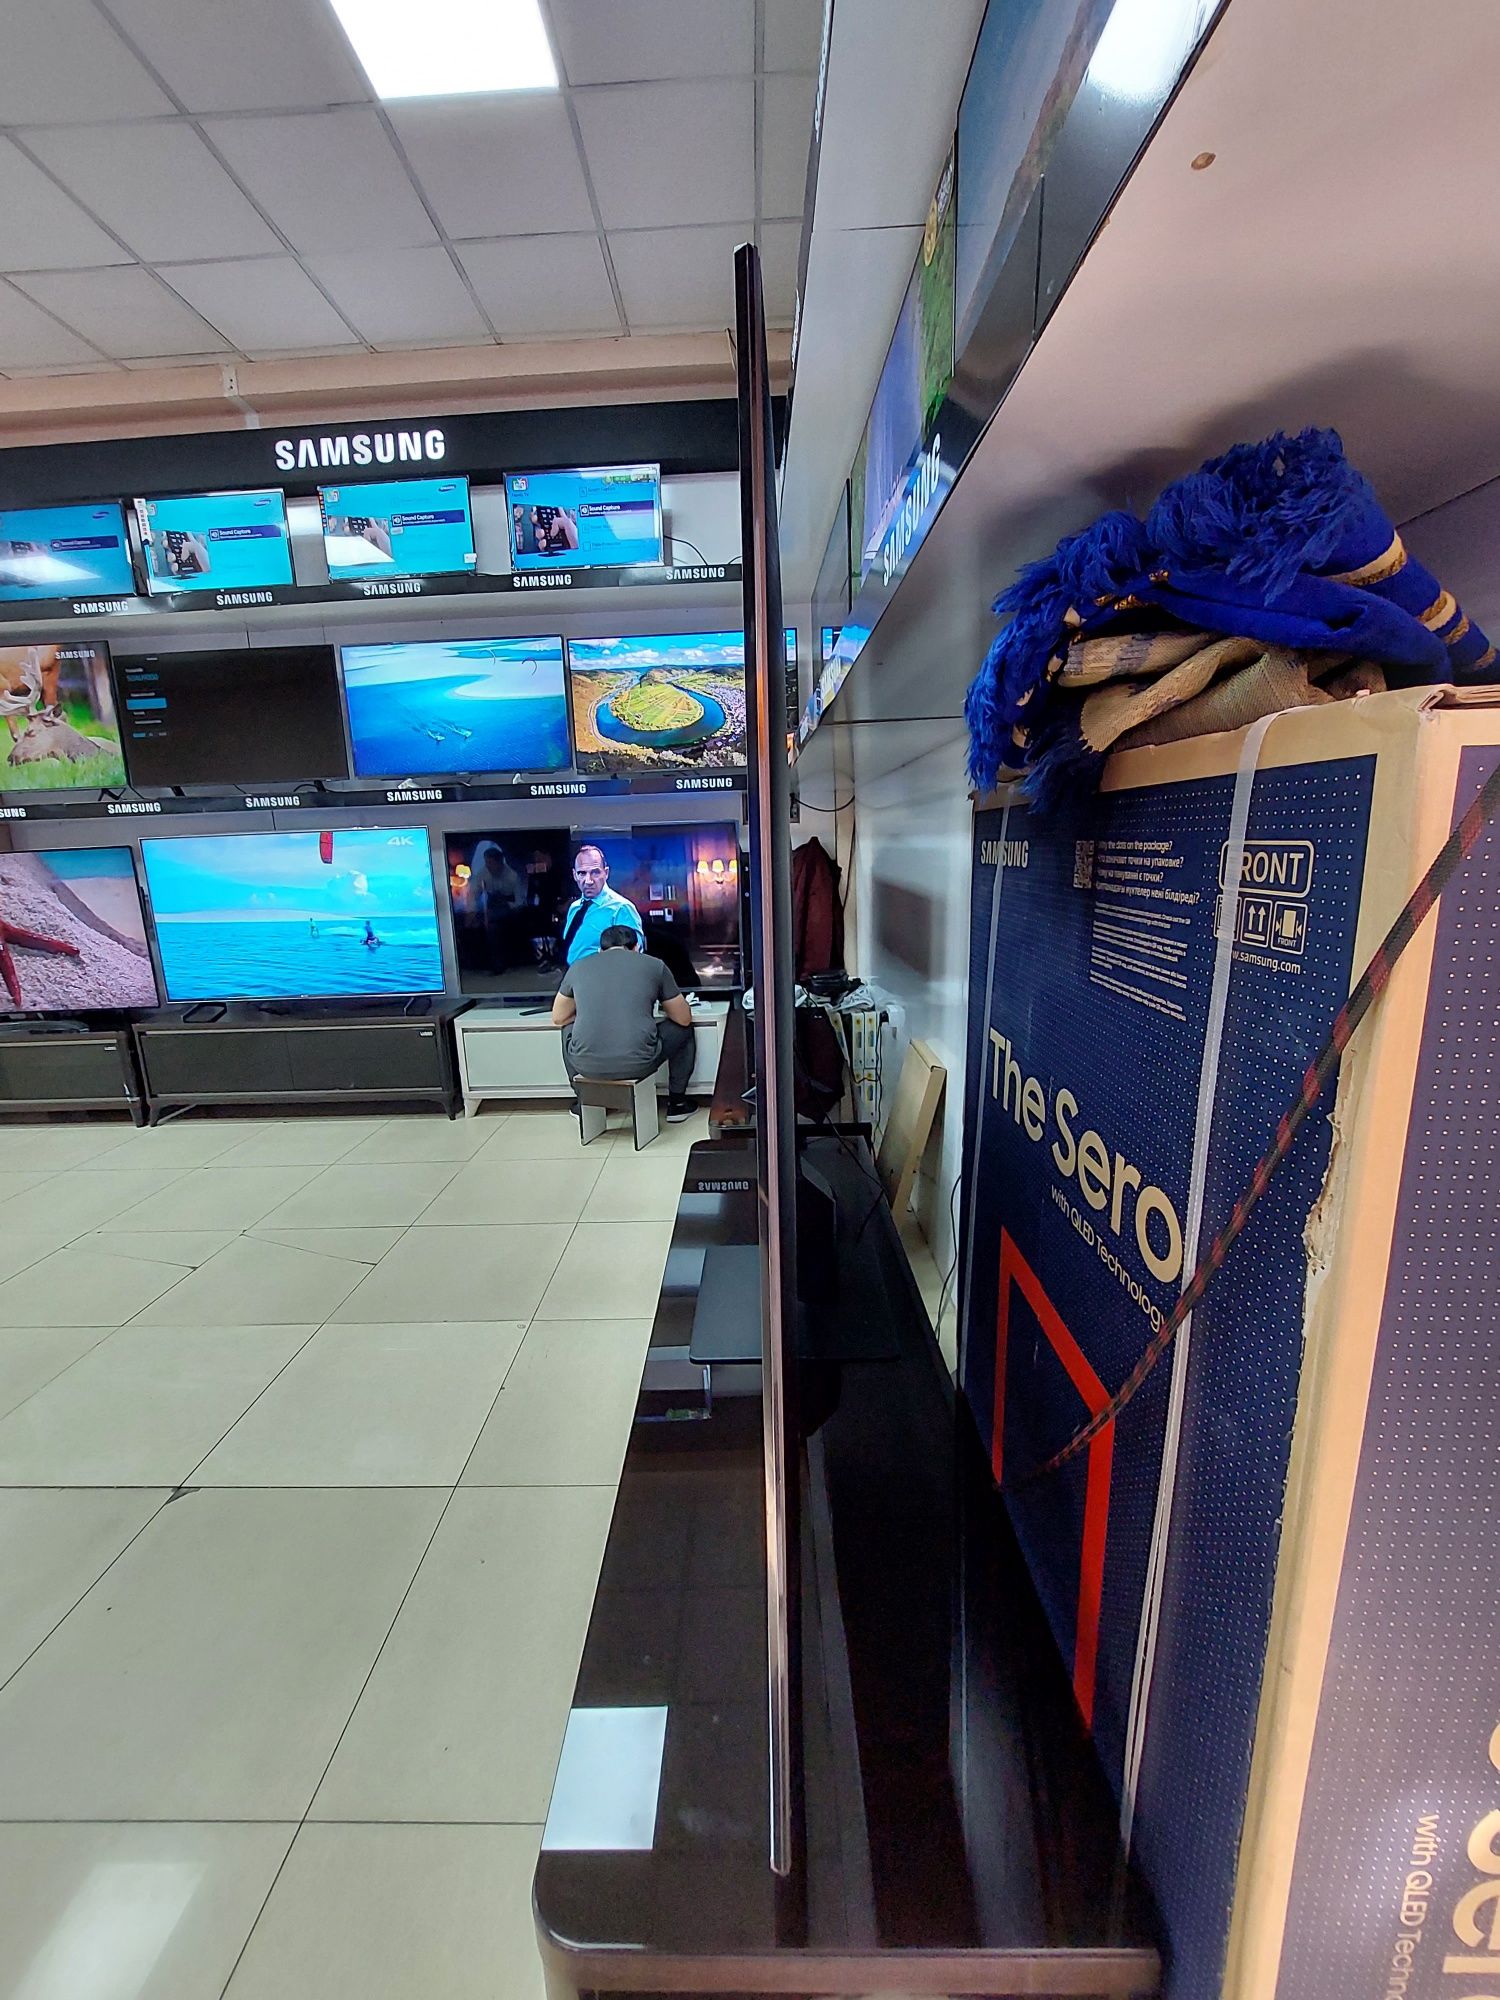 Телевизор QLED Samsung QE85Q70B 85" (Новинка 2022) + акция